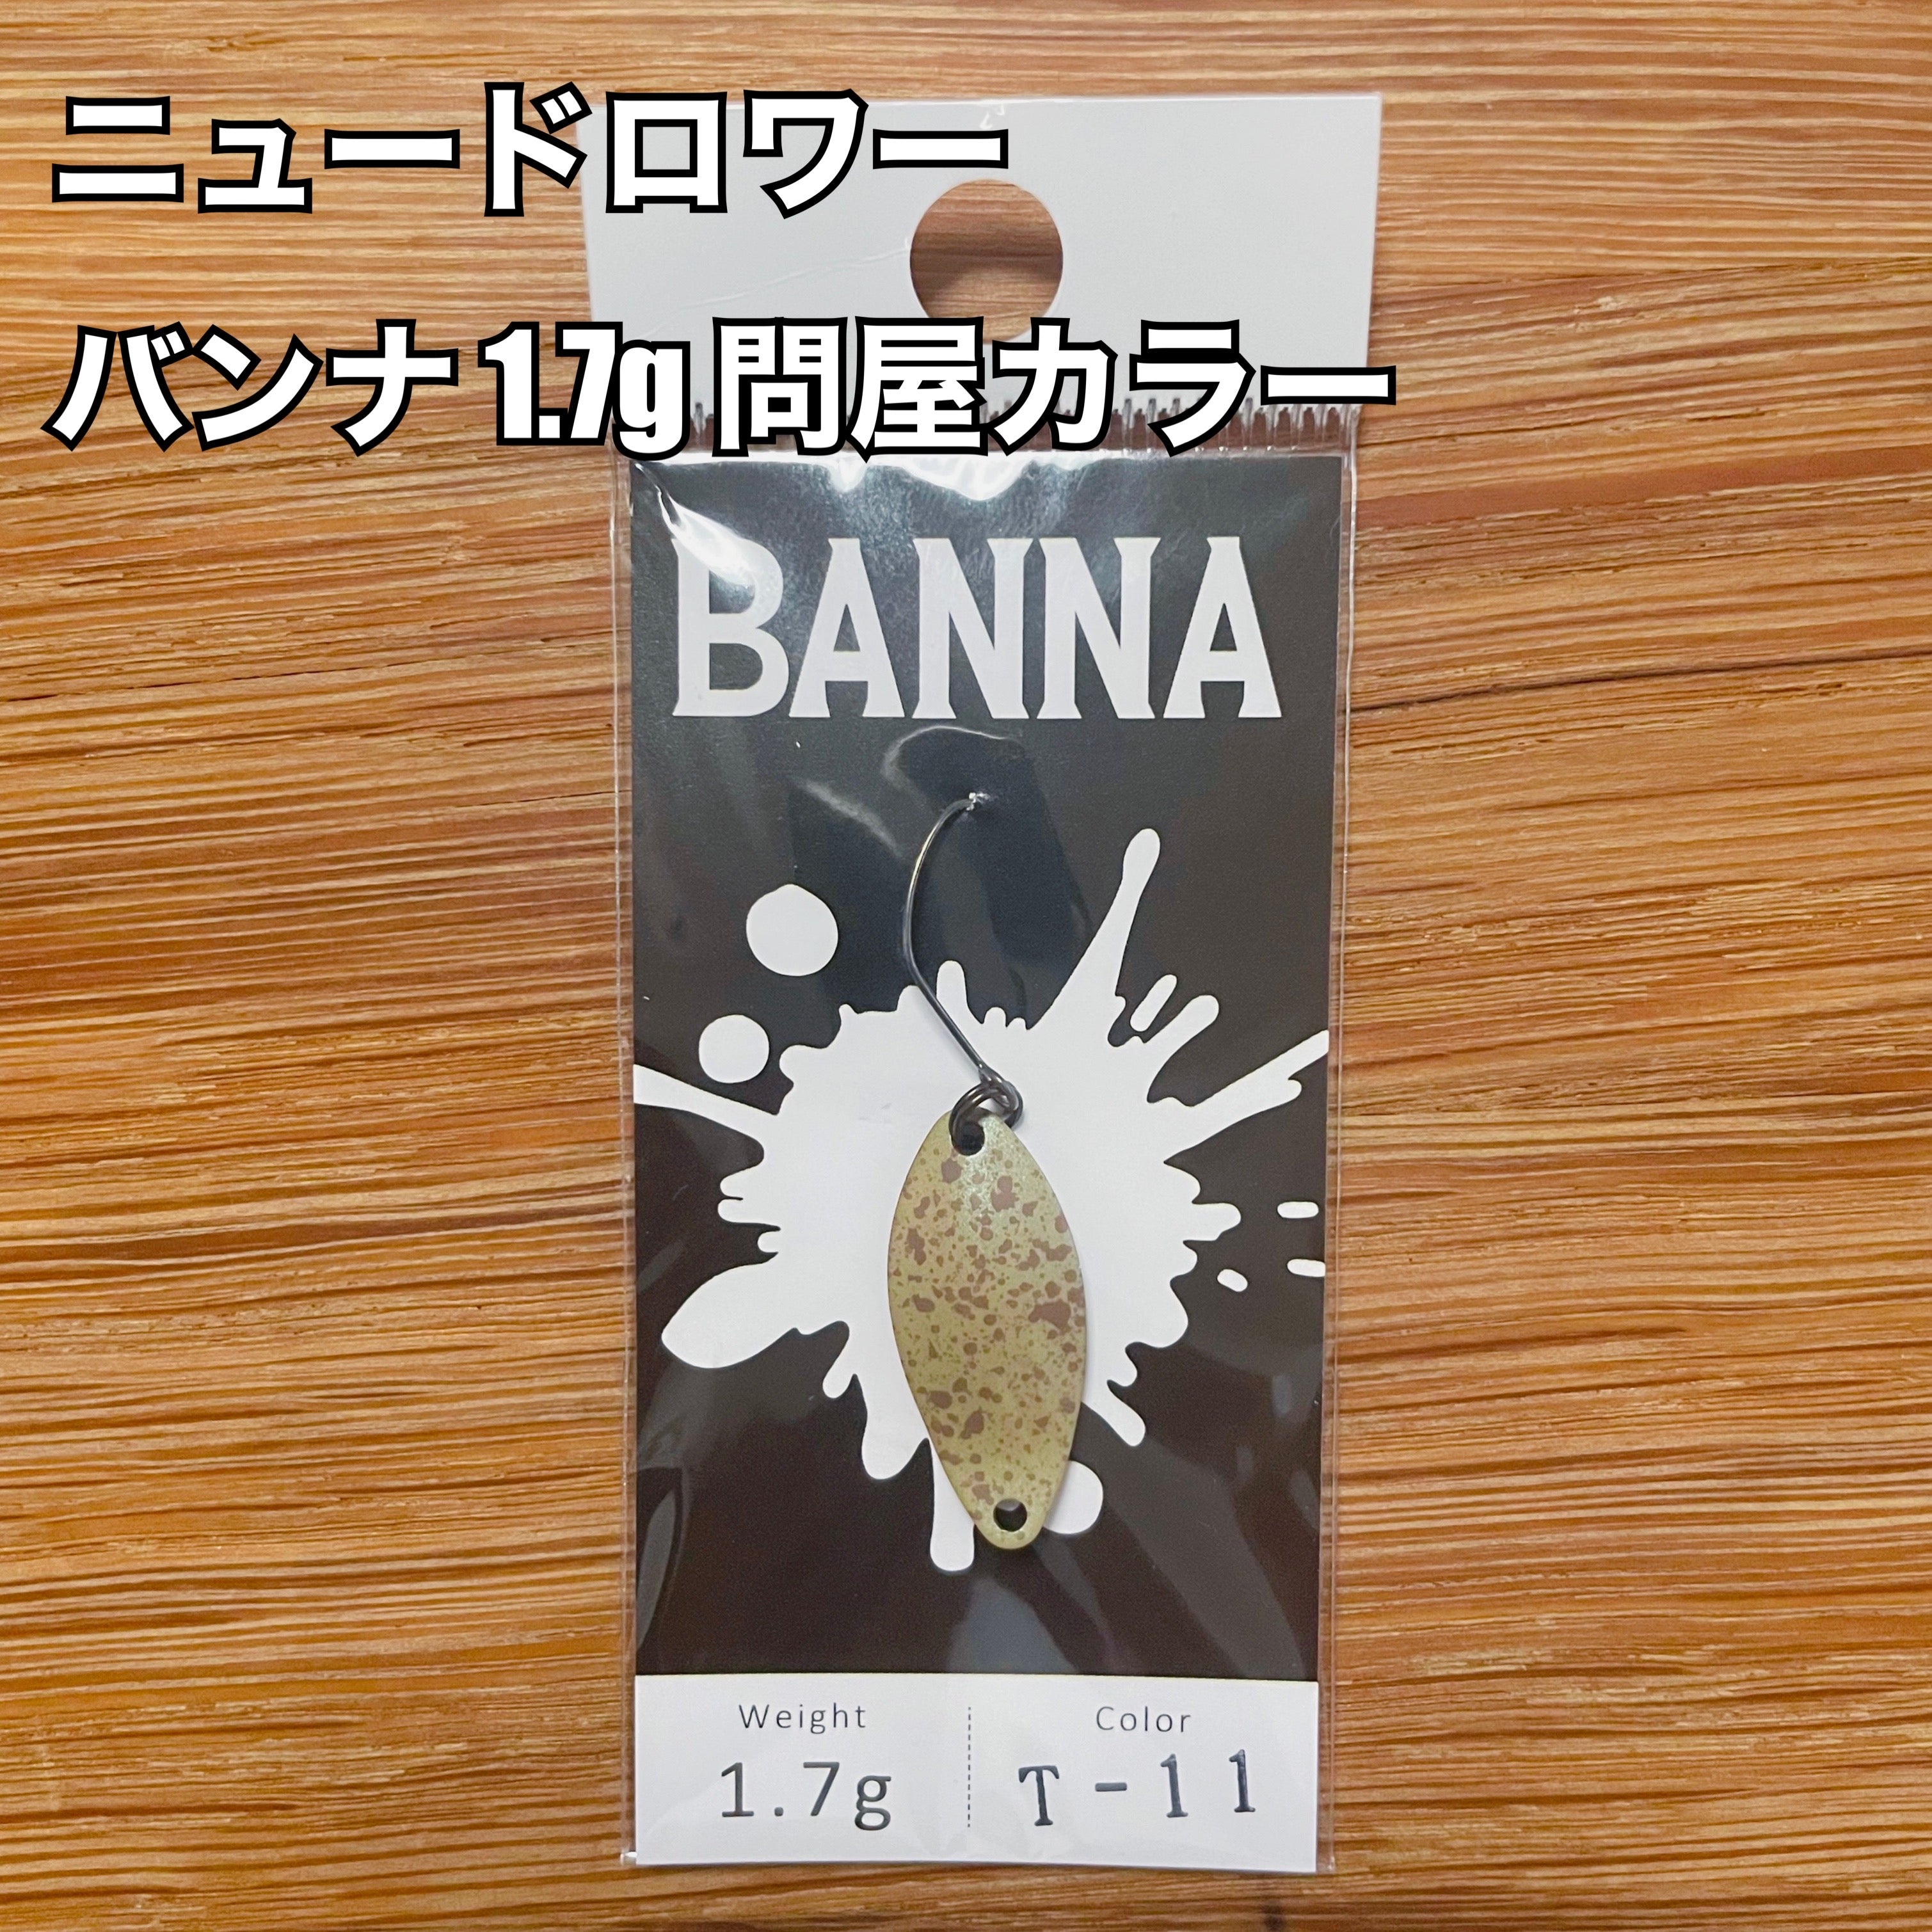 【トレジャーハント🏃💨】ニュードロワー バンナ 1.7g 【問屋カラー】/ New Drawer BANNA 1.7g【Tonya color】